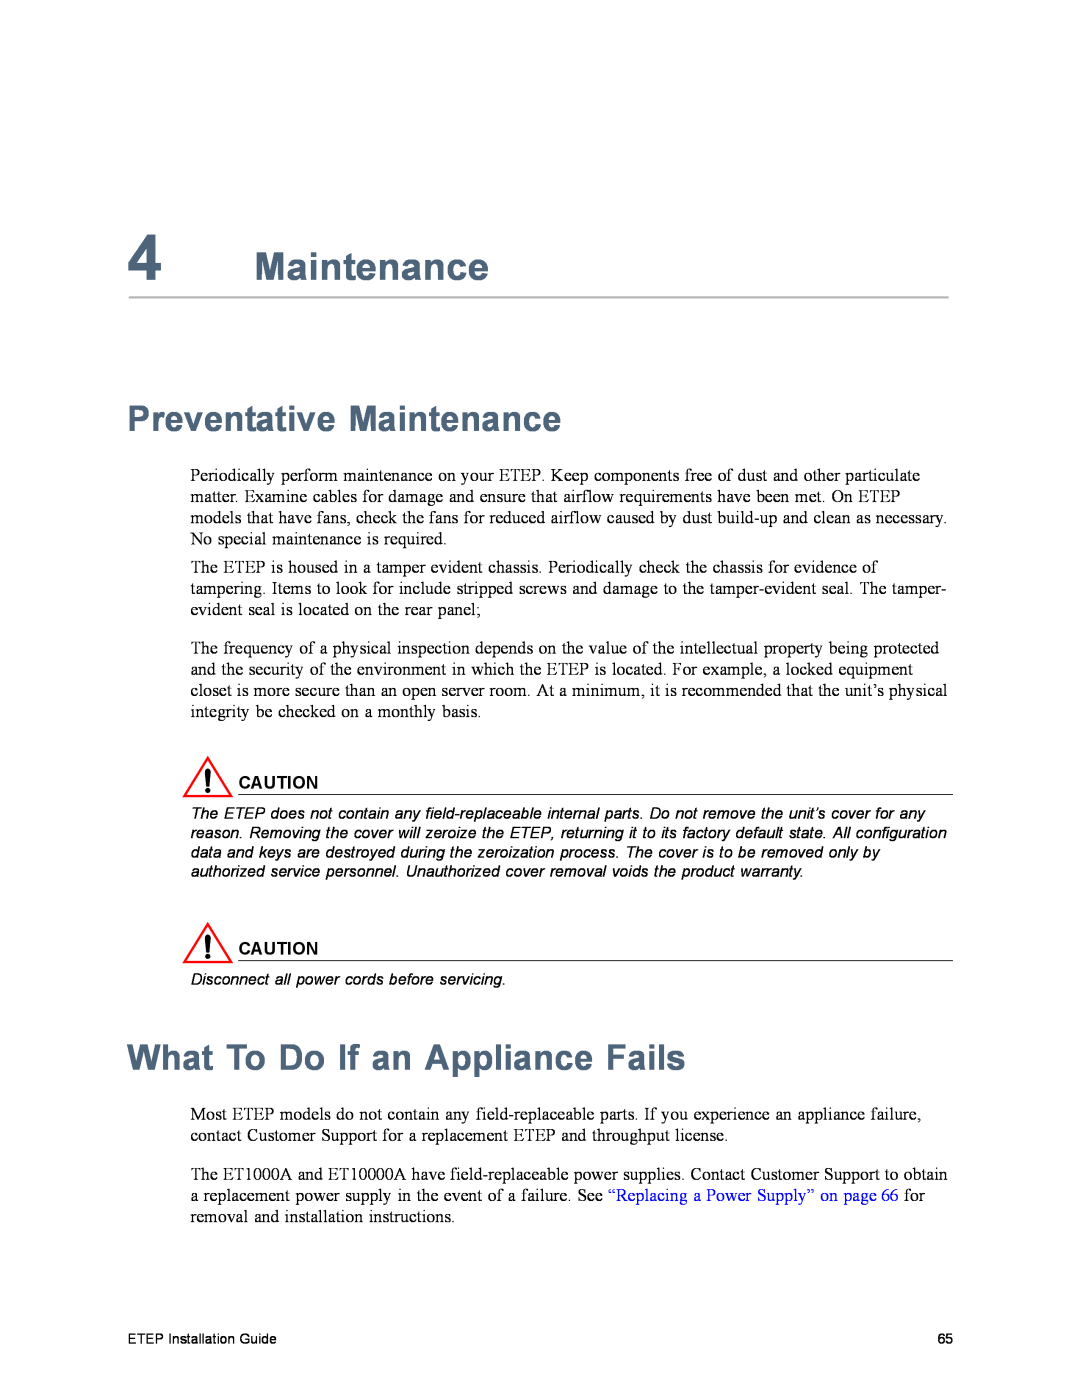 Black Box ET1000A, ET0010A, ET0100A, ET10000A manual Preventative Maintenance, What To Do If an Appliance Fails 